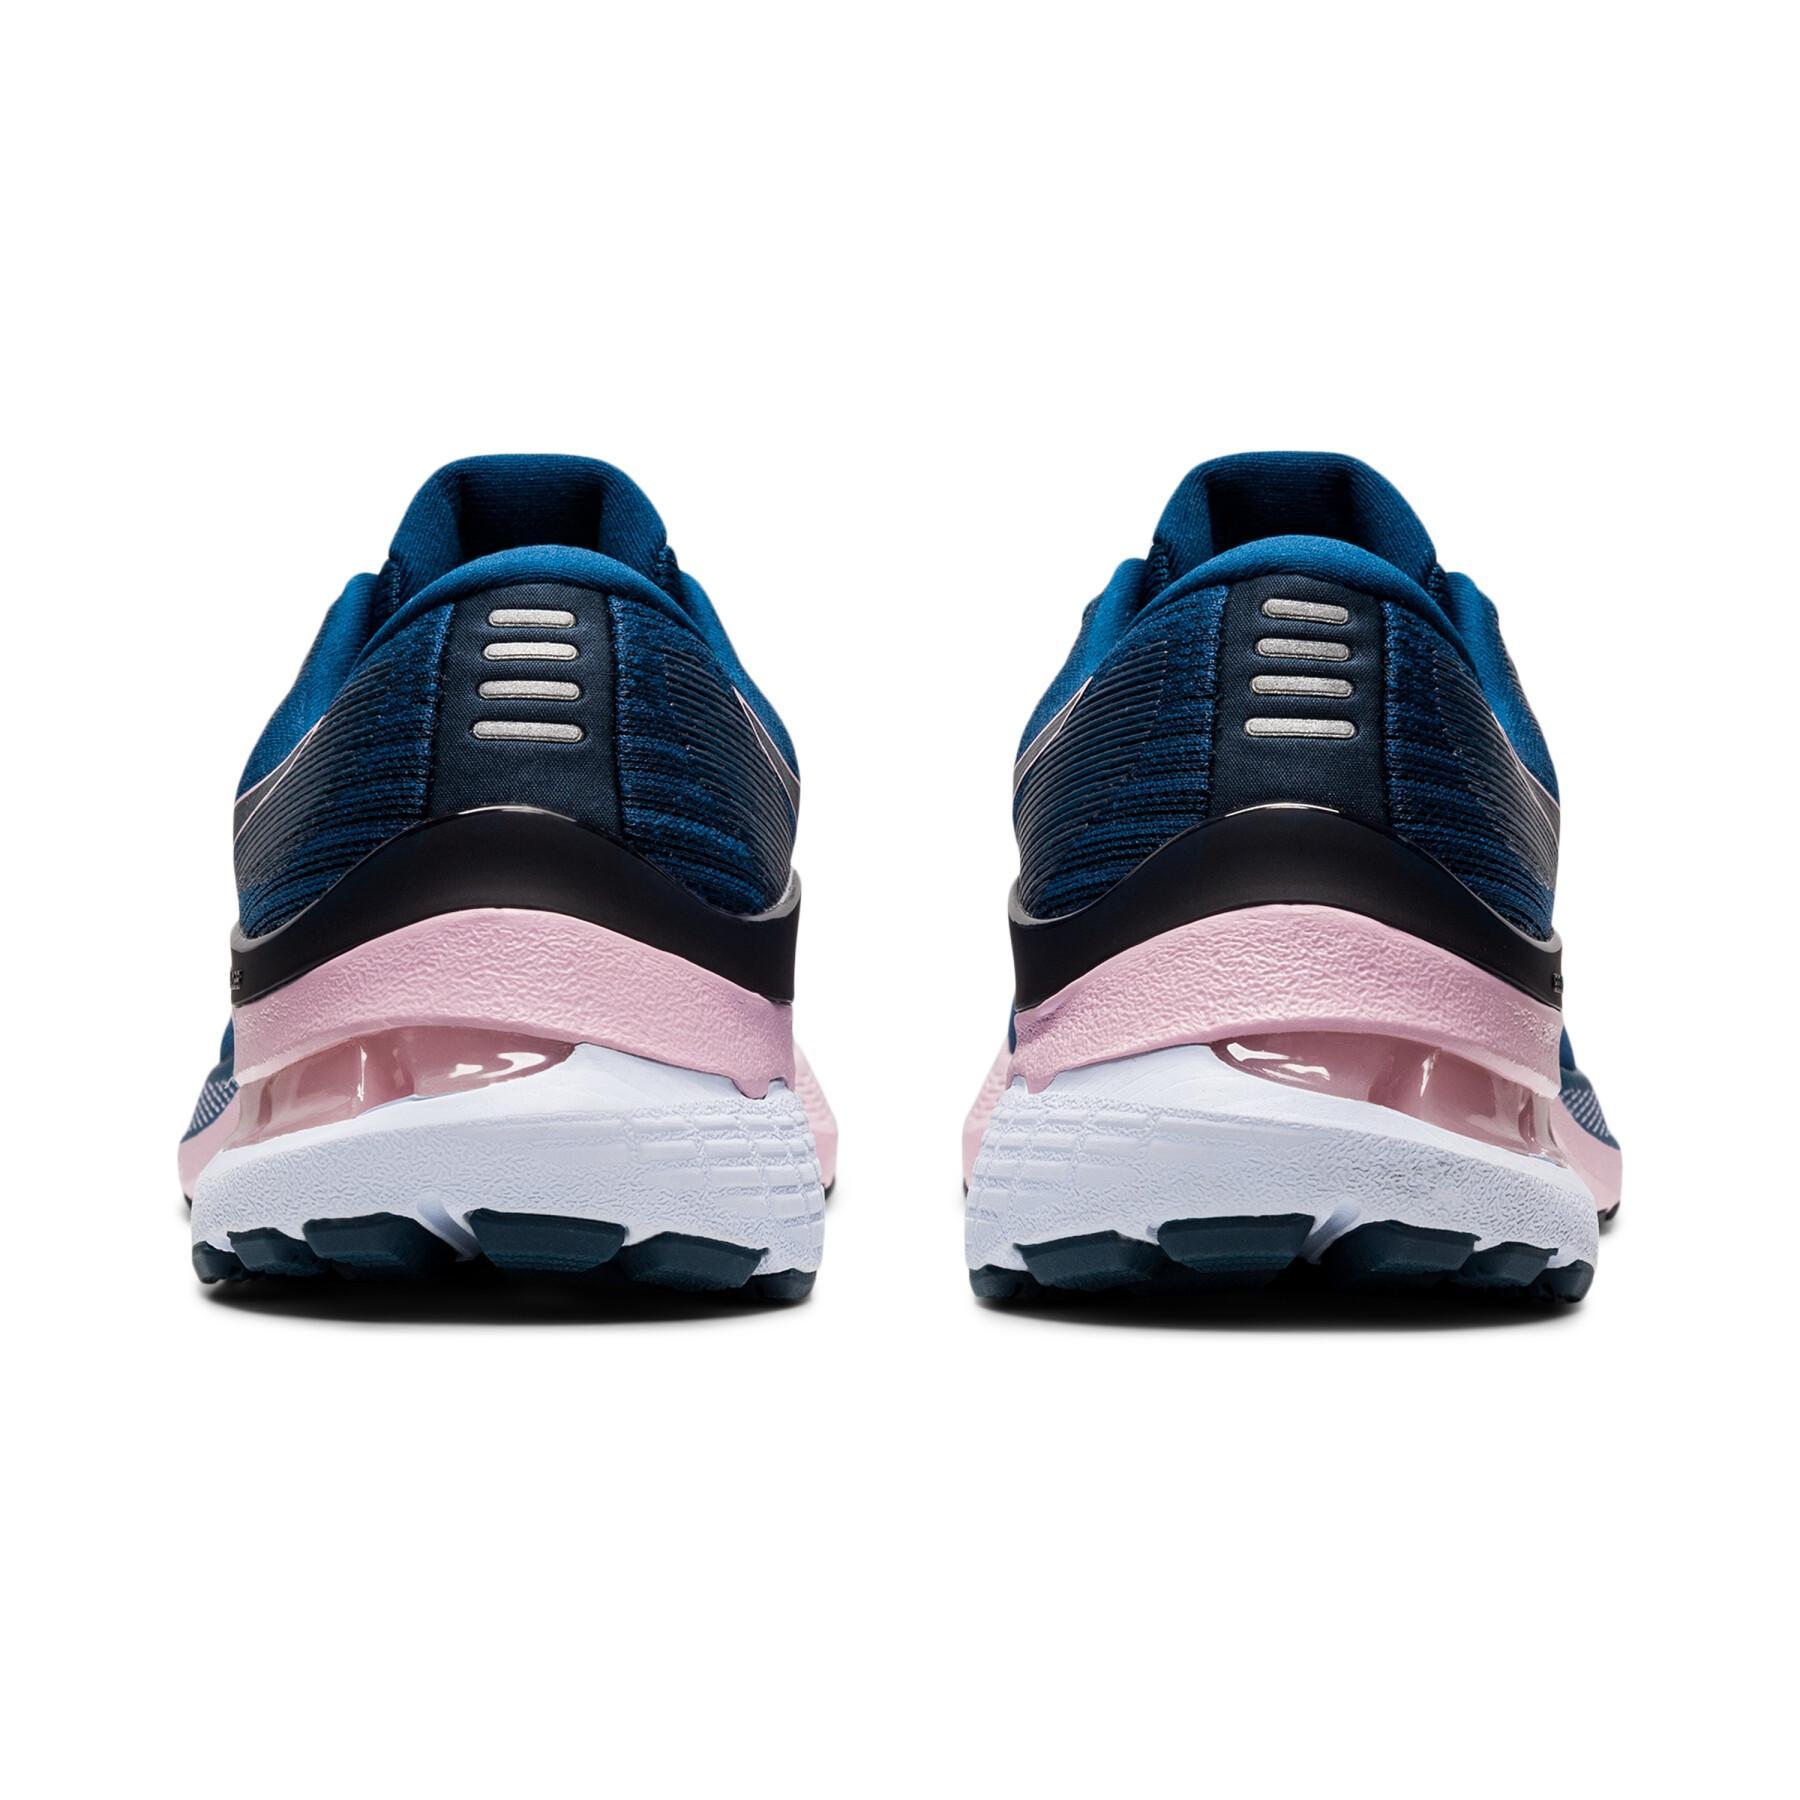 Chaussures de running femme Asics Gel-Kayano 28